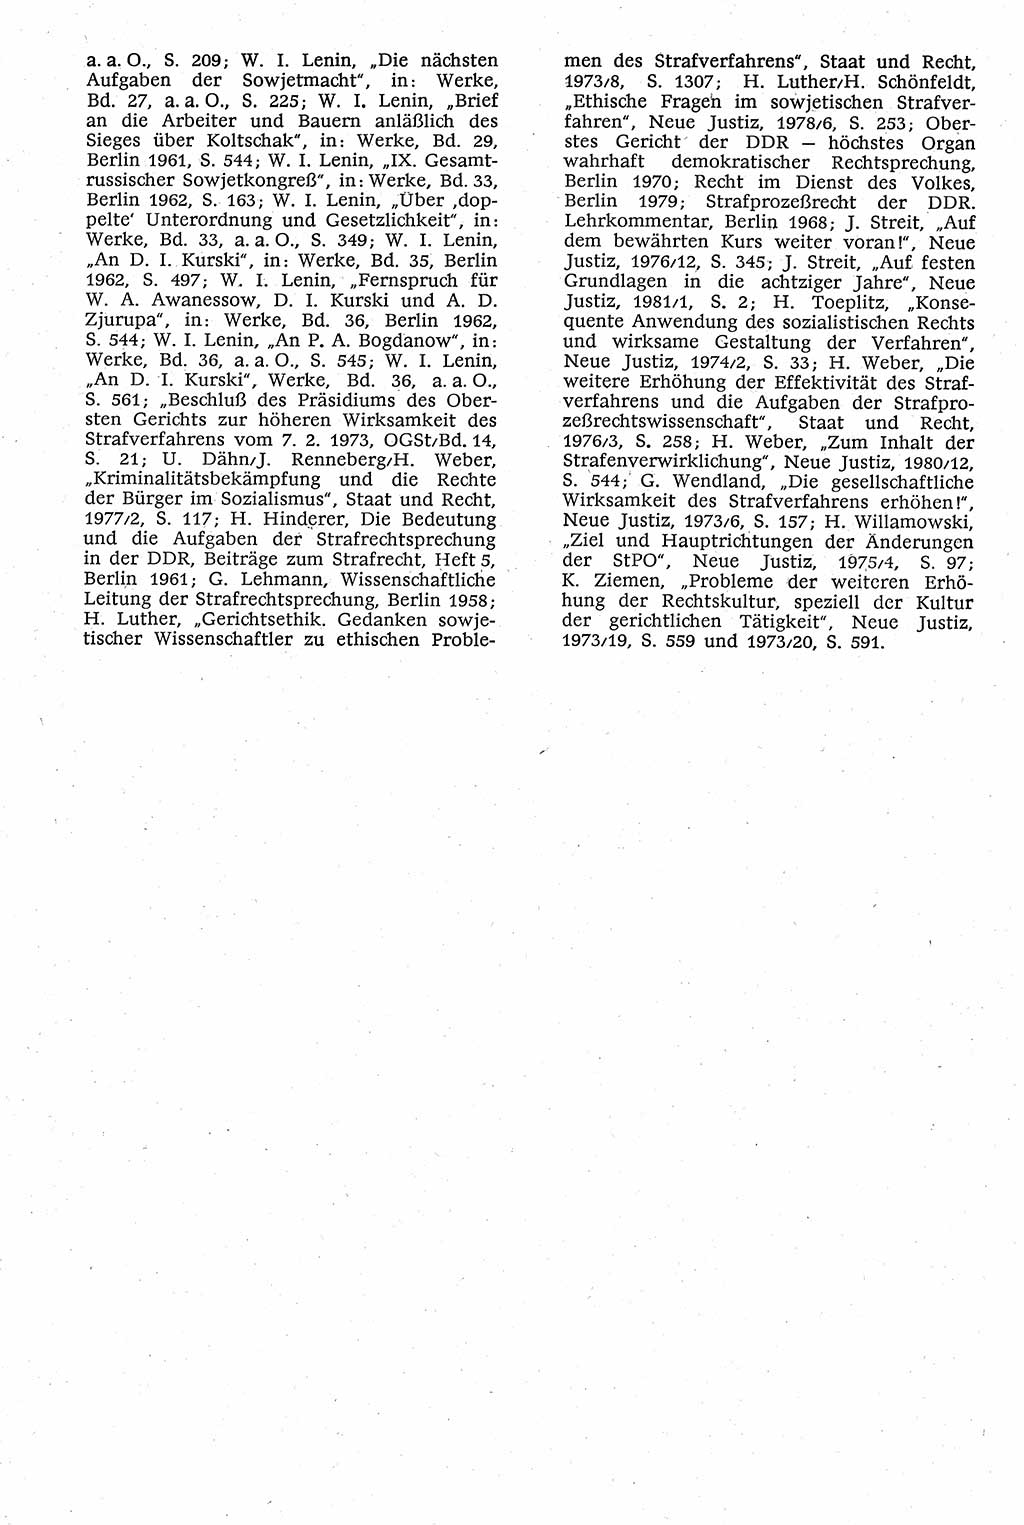 Strafverfahrensrecht [Deutsche Demokratische Republik (DDR)], Lehrbuch 1982, Seite 32 (Strafverf.-R. DDR Lb. 1982, S. 32)